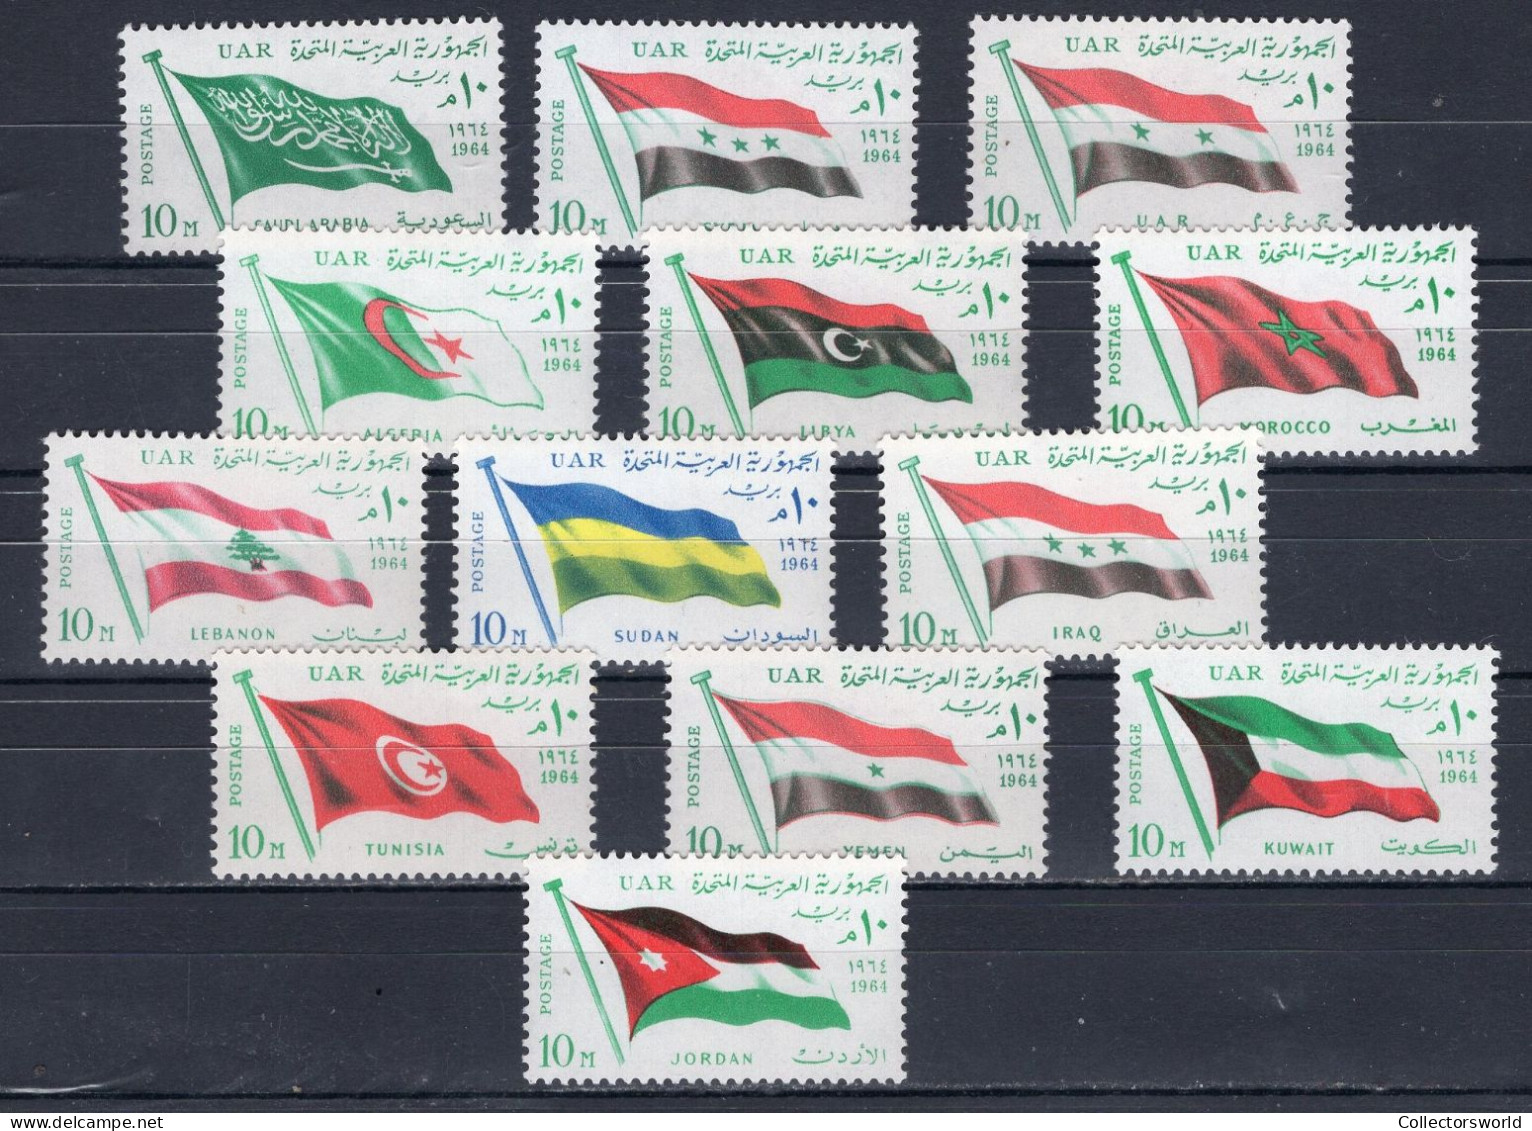 UAR United Arab Emirates Egypt 1964 Serie 13v Flags Arab League Summit MNH - United Arab Emirates (General)